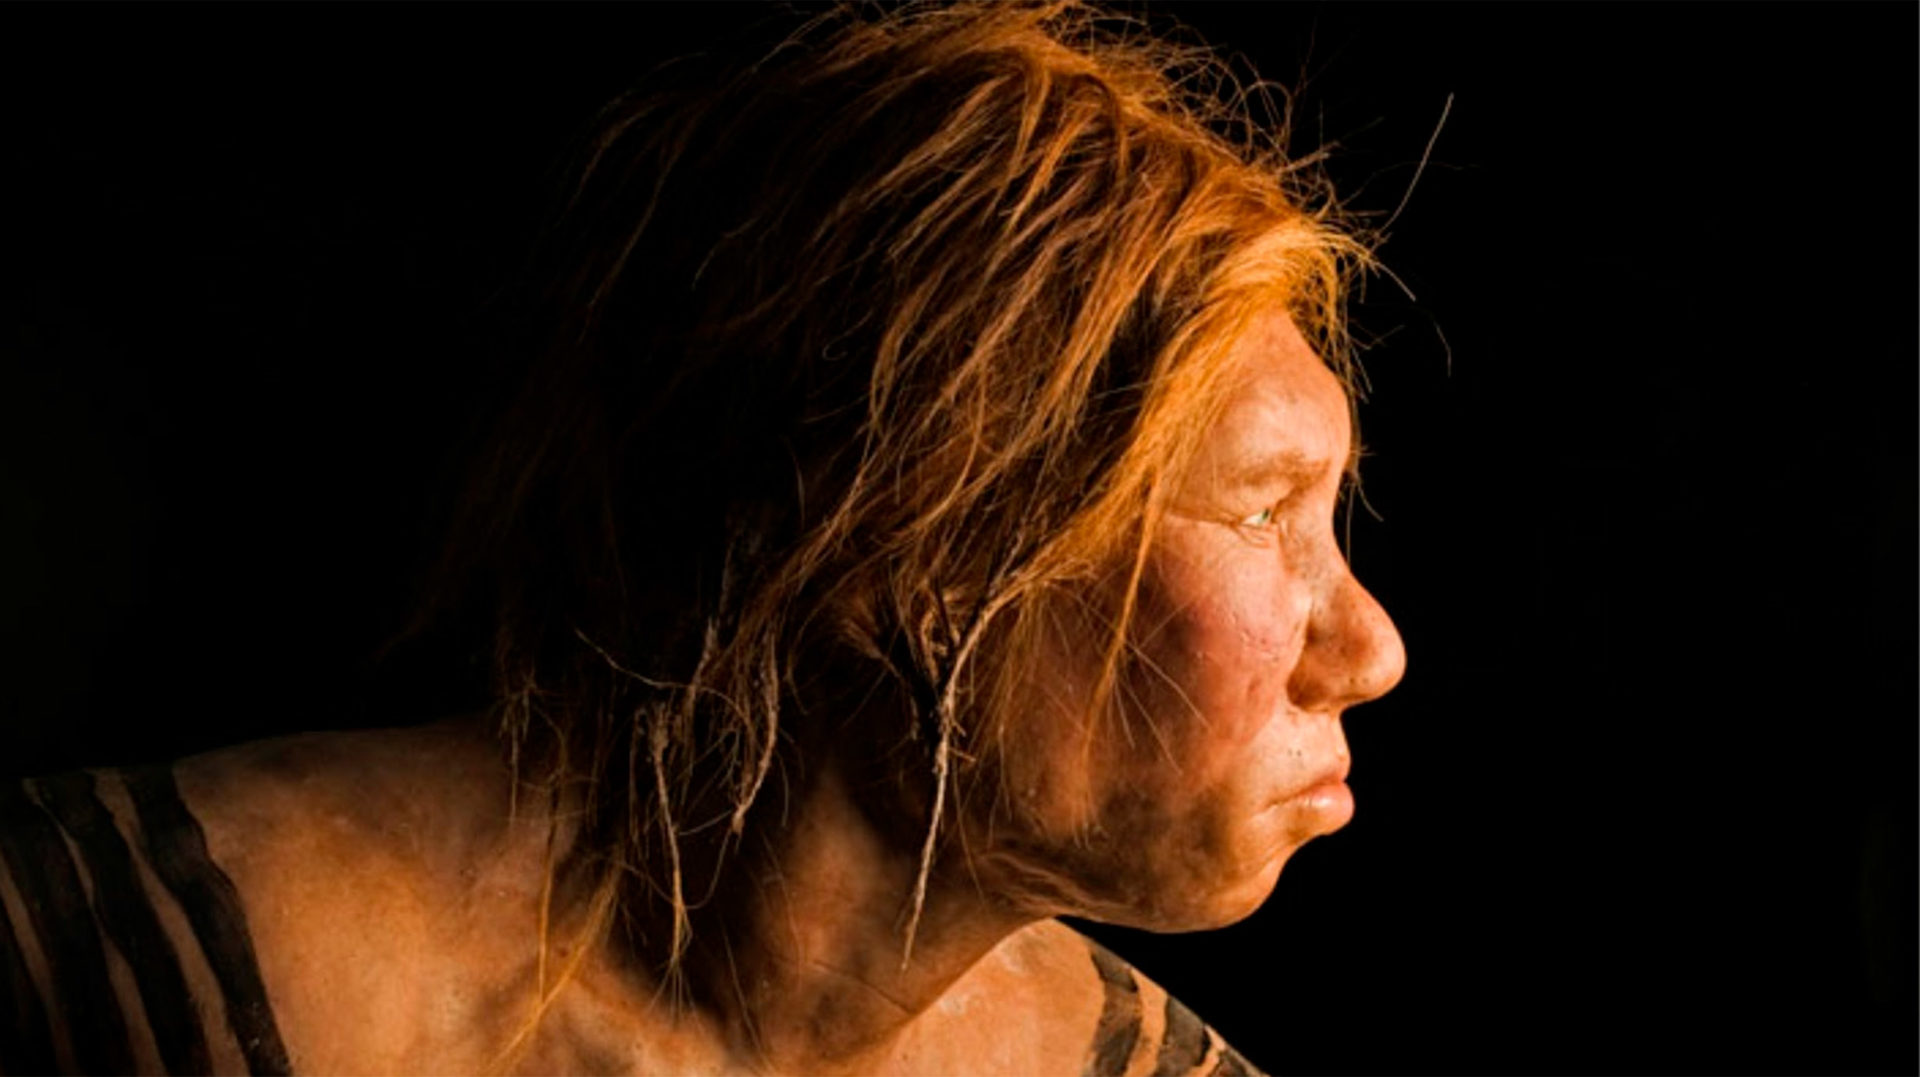 Neandertals a Catalunya